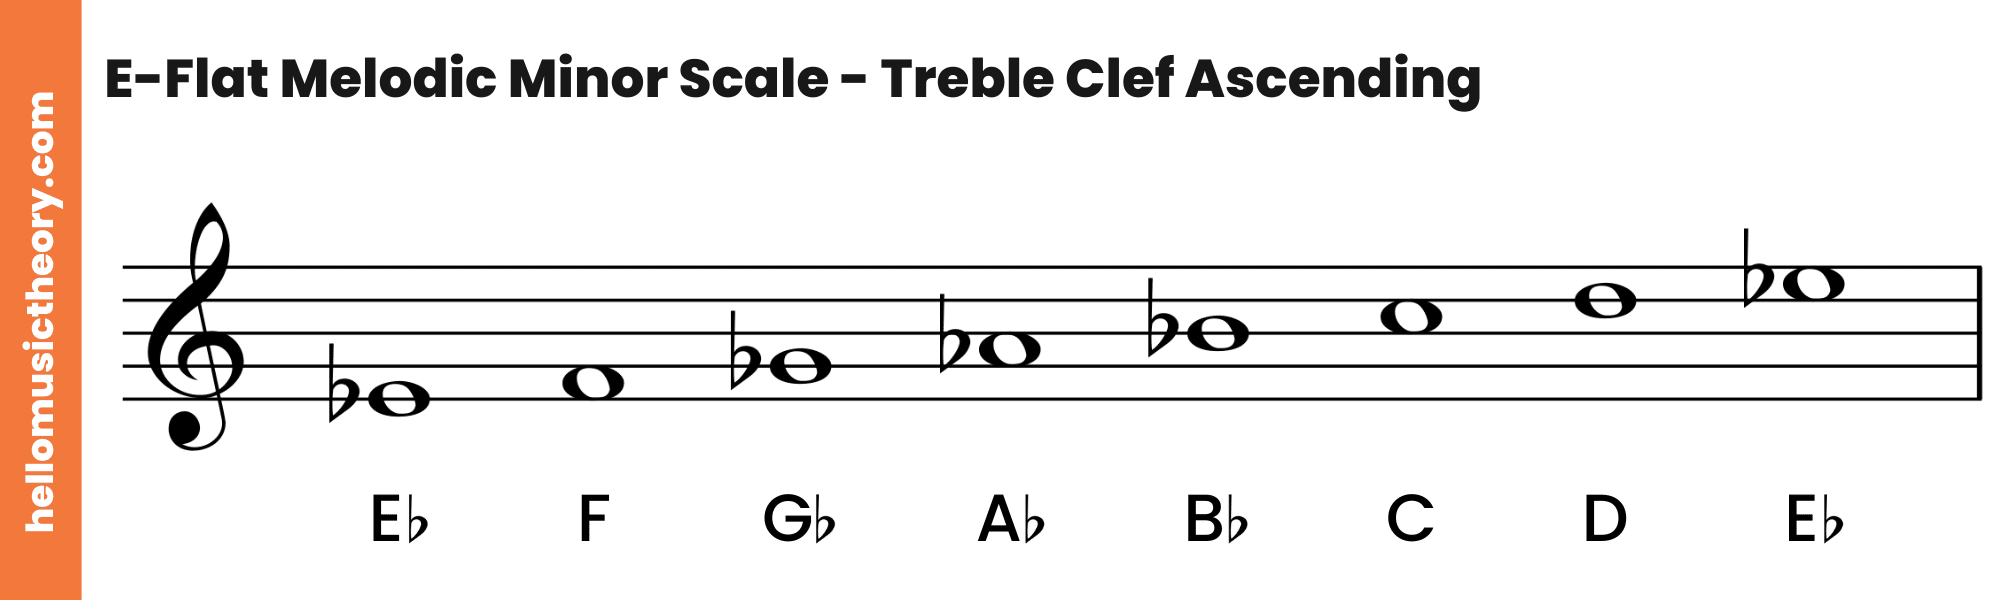 E-Flat Melodic Minor Scale Treble Clef Ascending